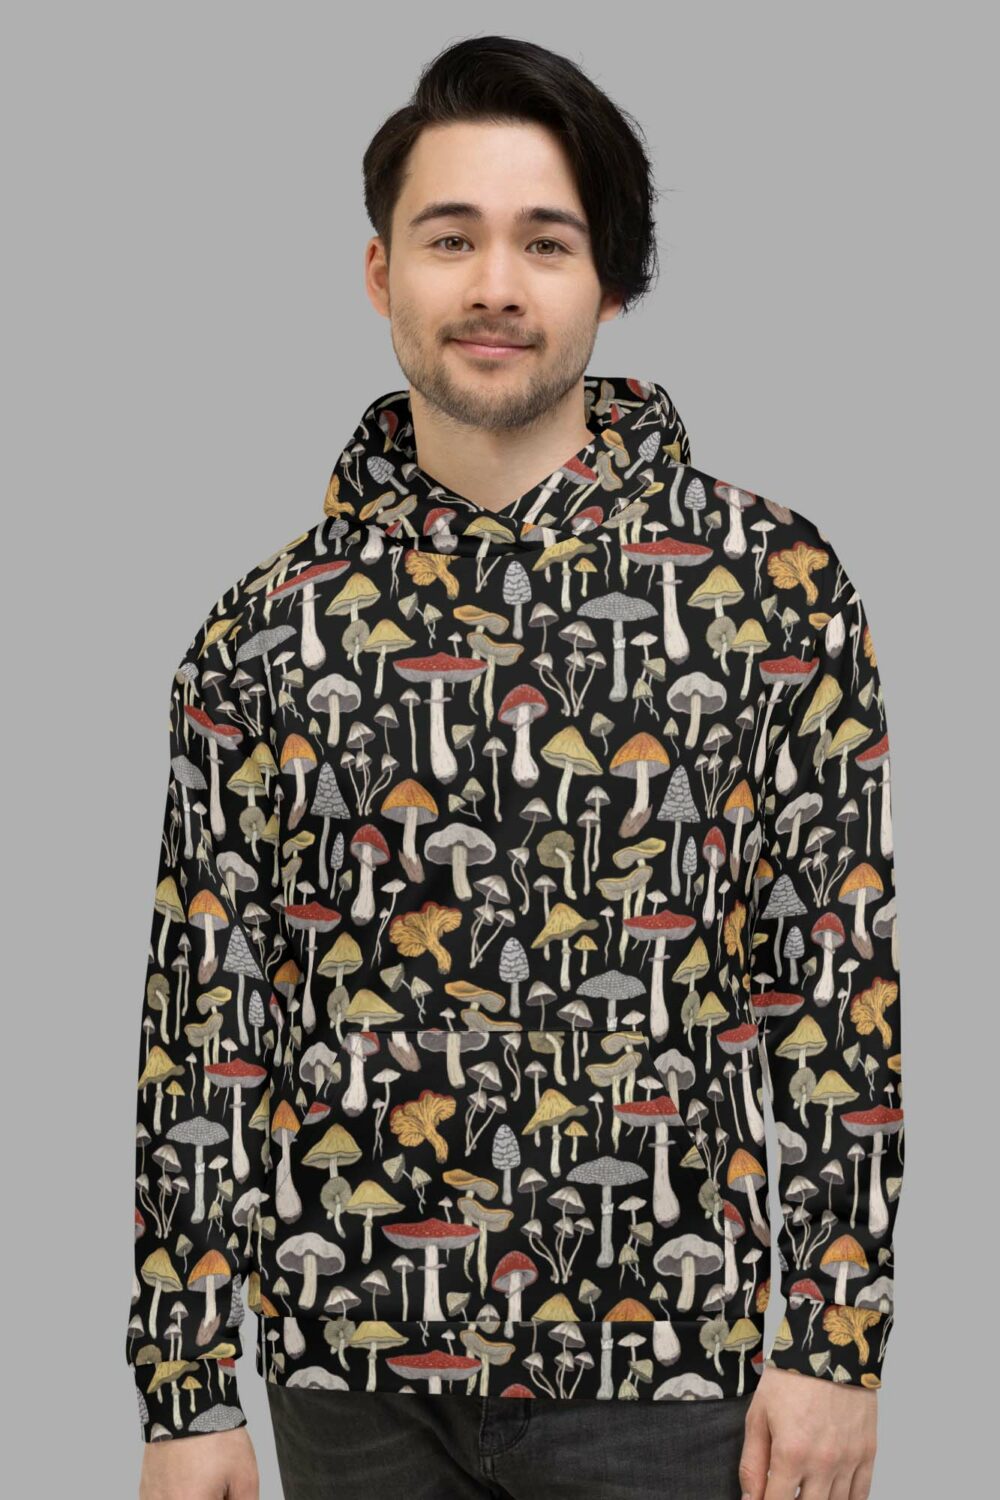 cosmic drifters hoodie dront2 mushroom print